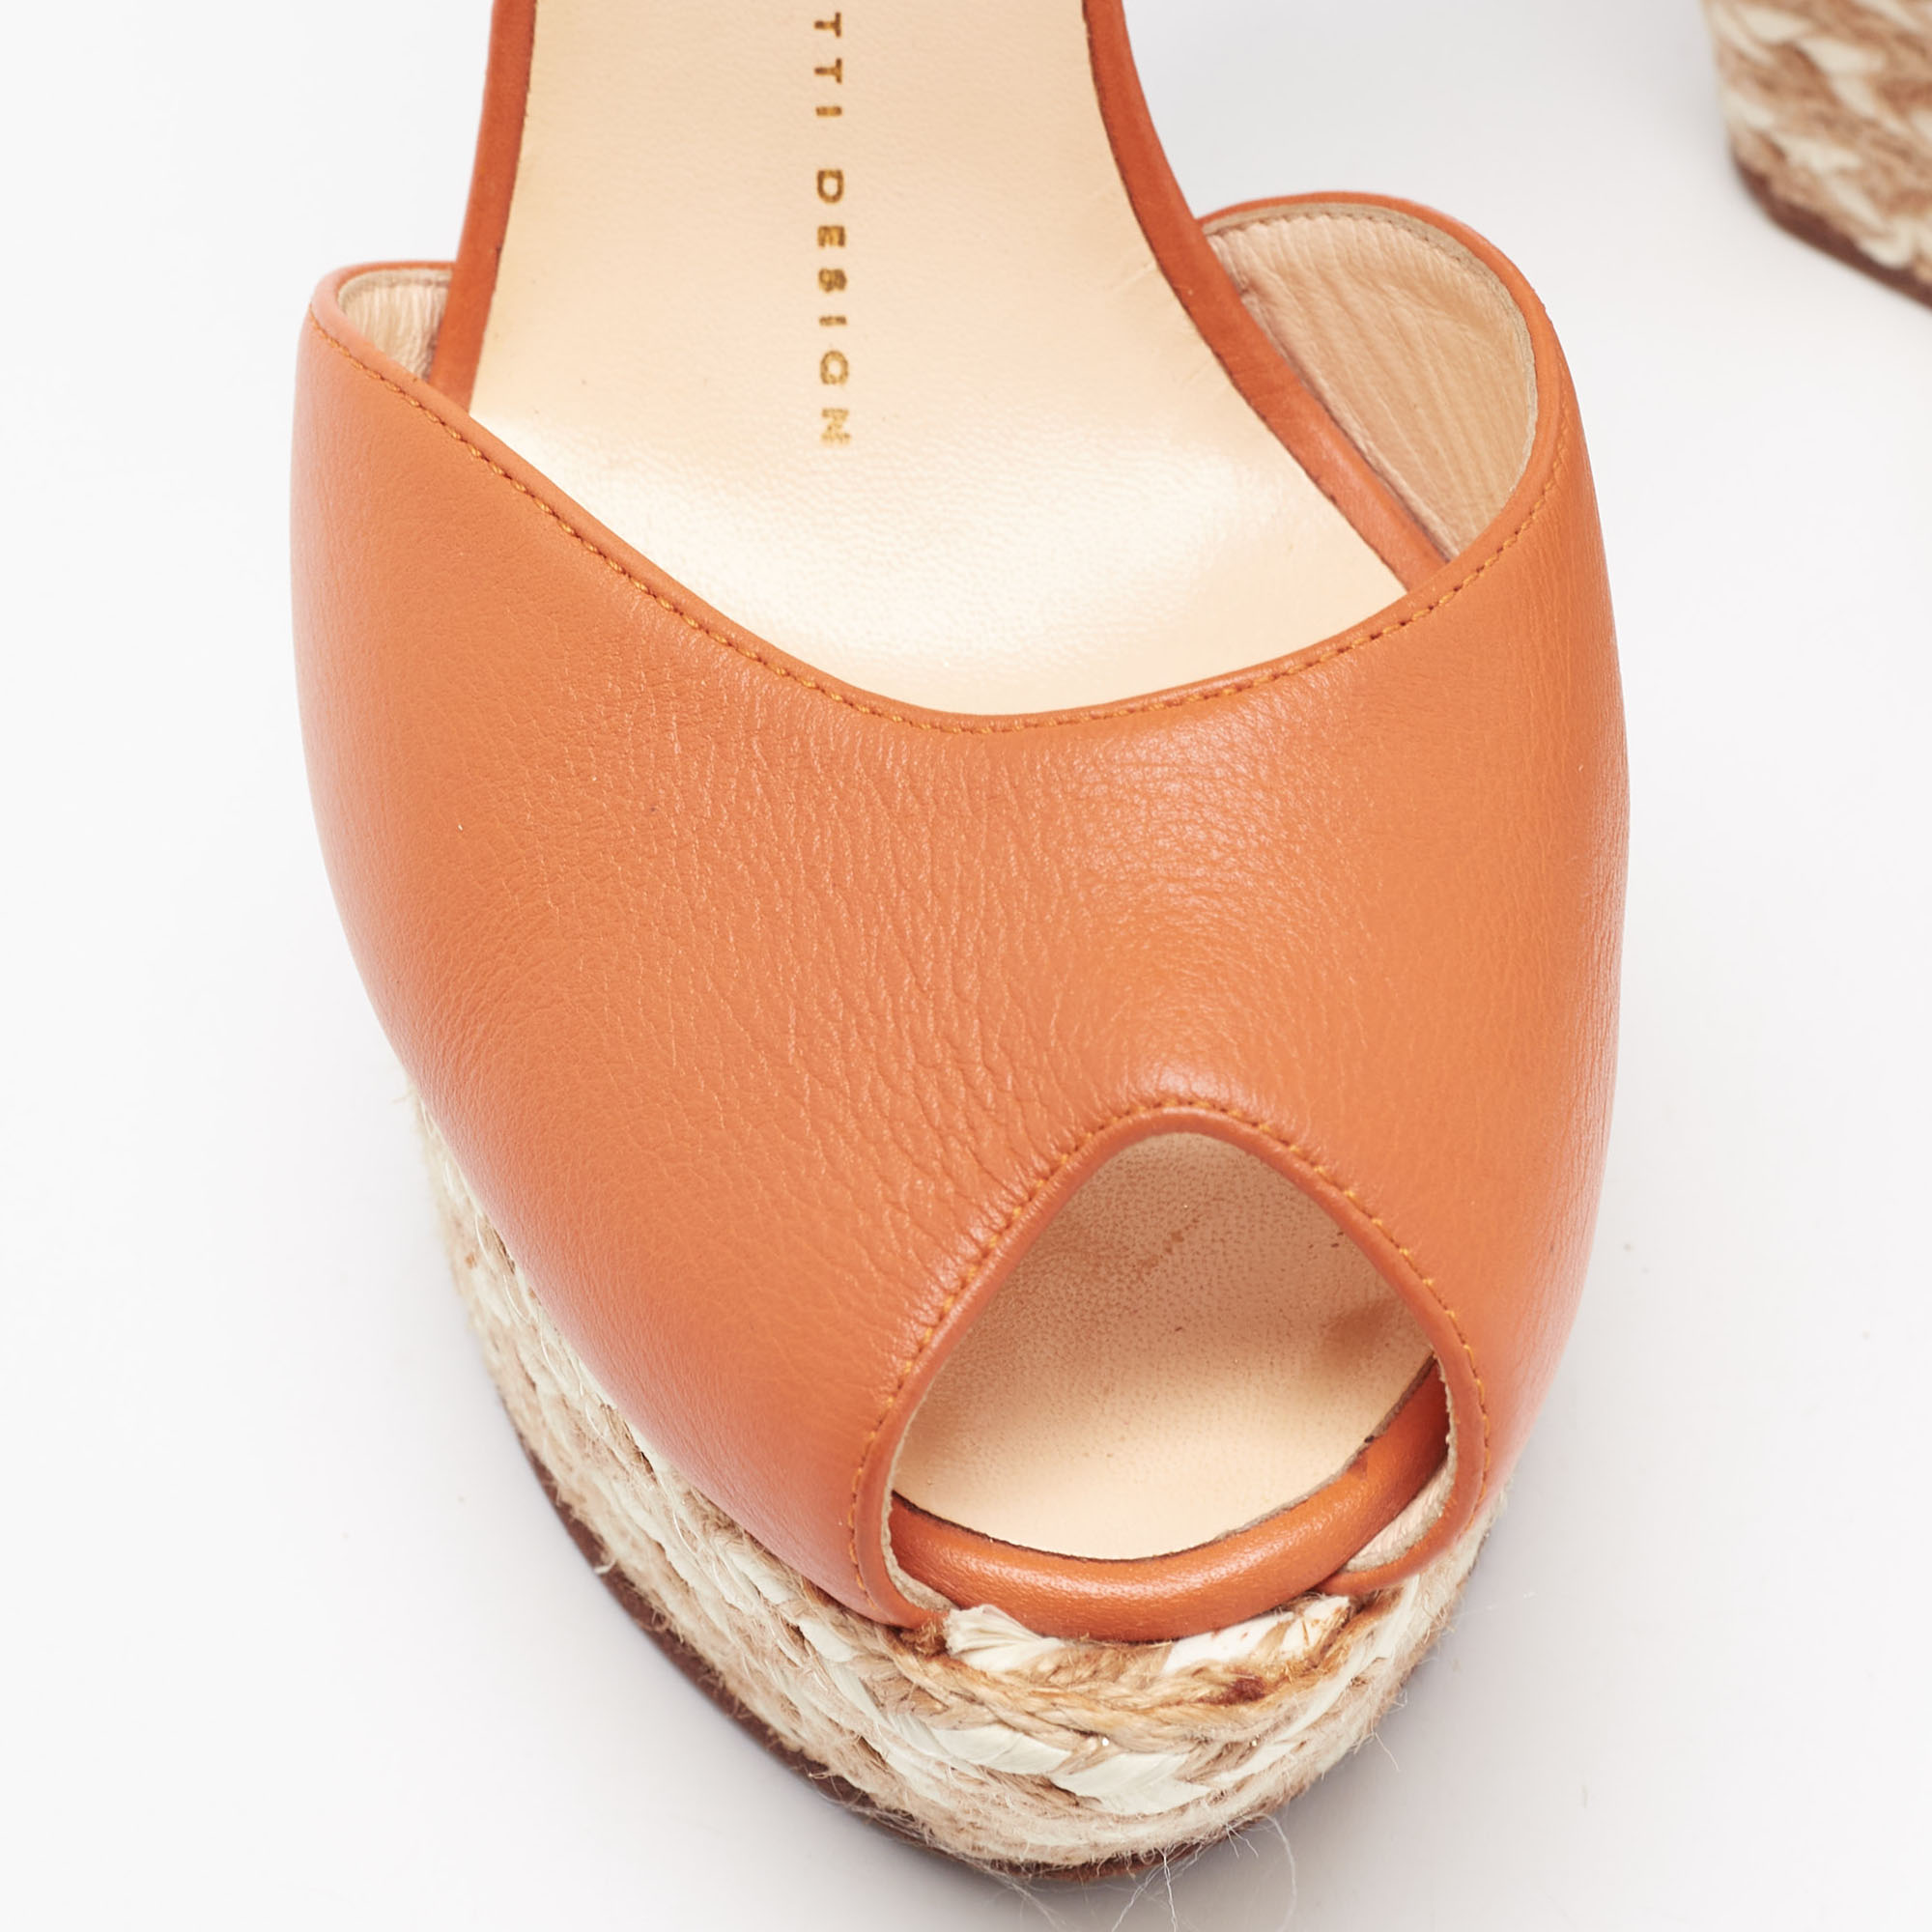 Giuseppe Zanotti Orange Leather Espadrille Platform Wedge Sandals Size 37.5